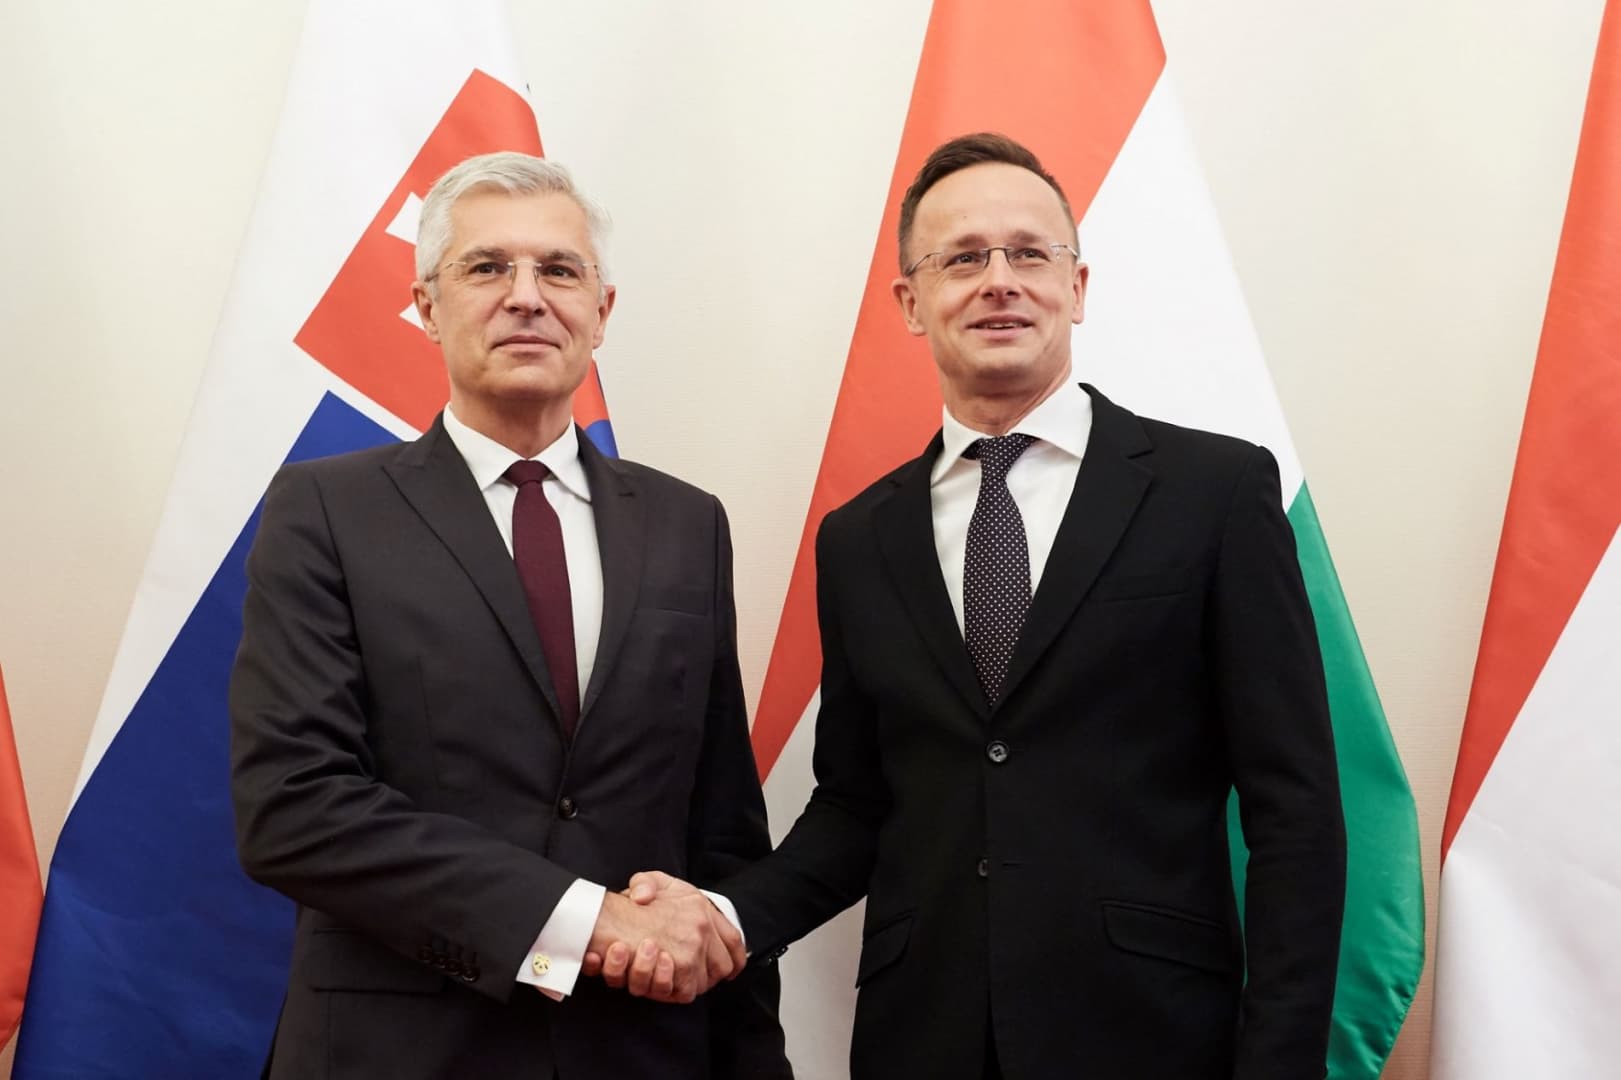 Szlovákia a megfelelő helyen fog állni a cseh-orosz konfliktus kapcsán